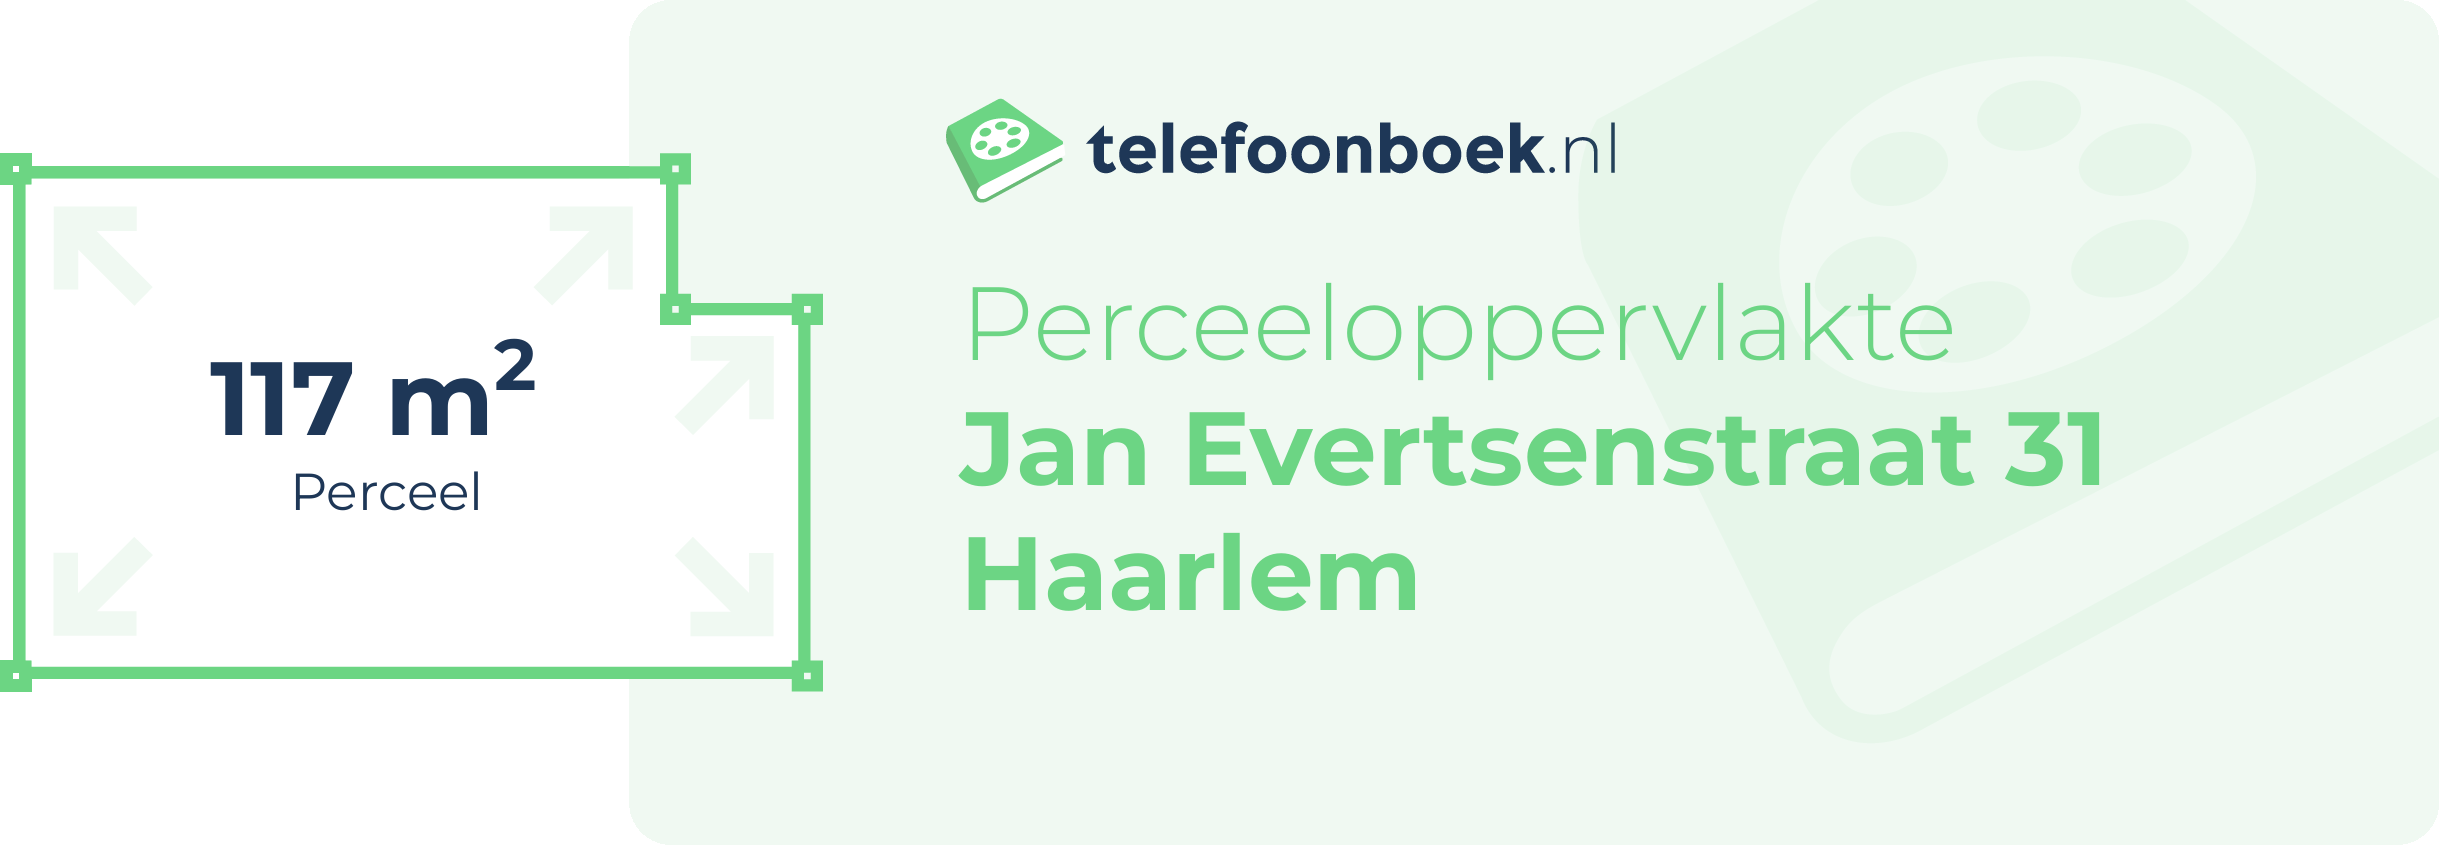 Perceeloppervlakte Jan Evertsenstraat 31 Haarlem